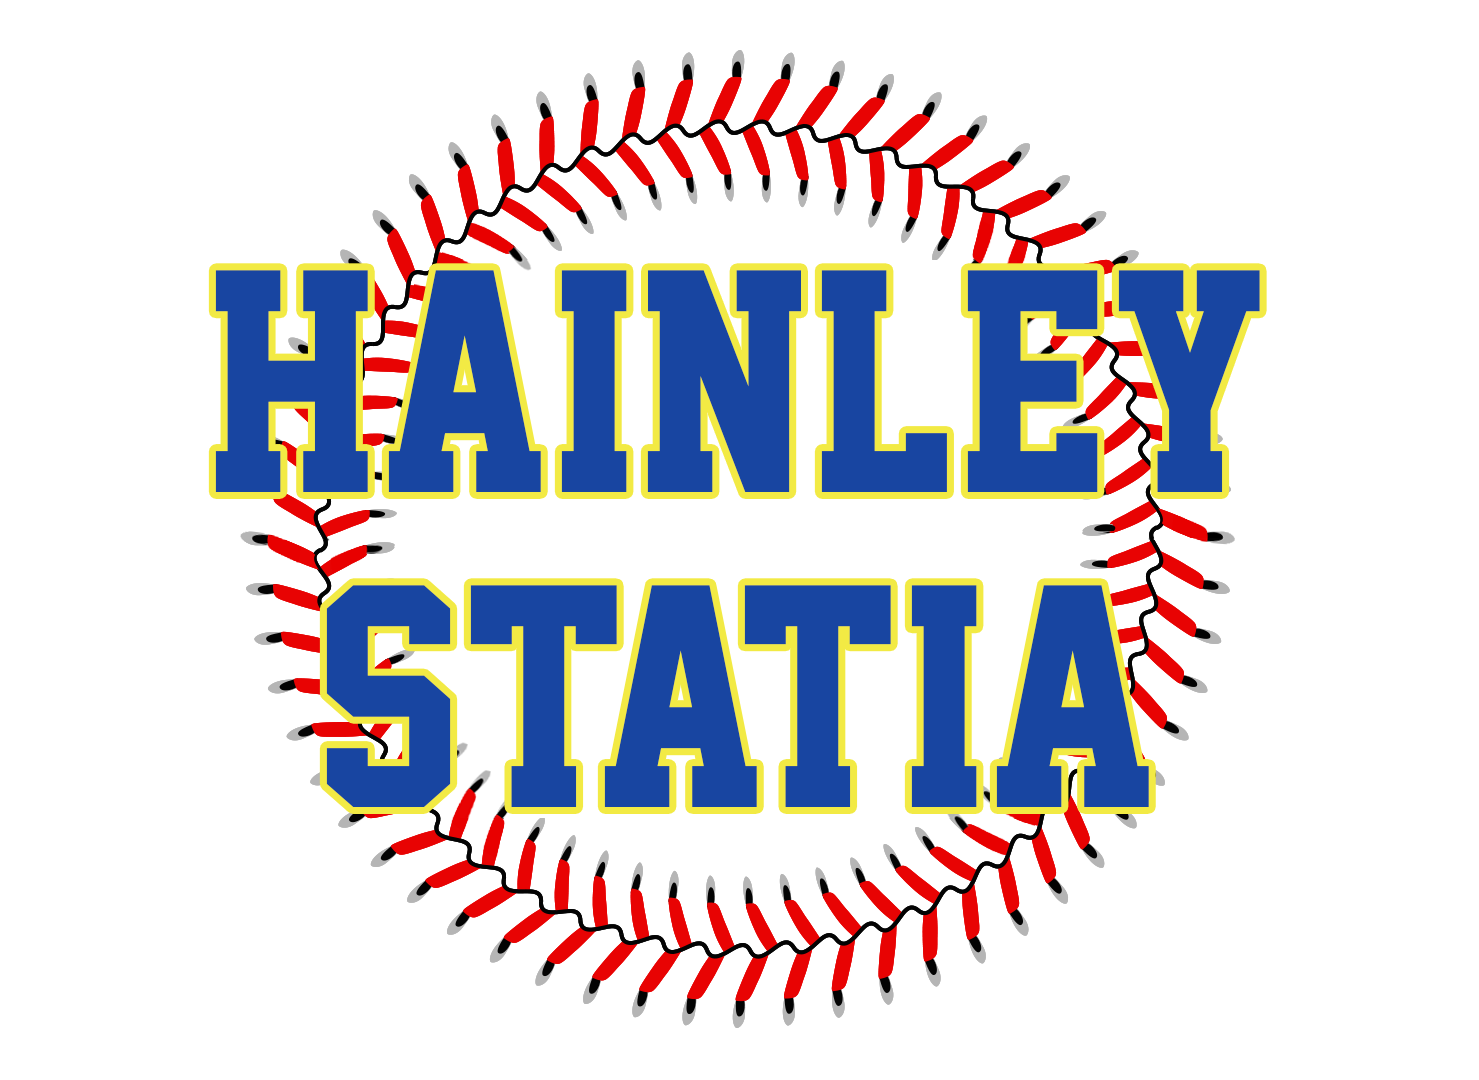 https://149845872.v2.pressablecdn.com/wp-content/uploads/2022/10/Baseball_Week_Coach_Hainley-Statia.png